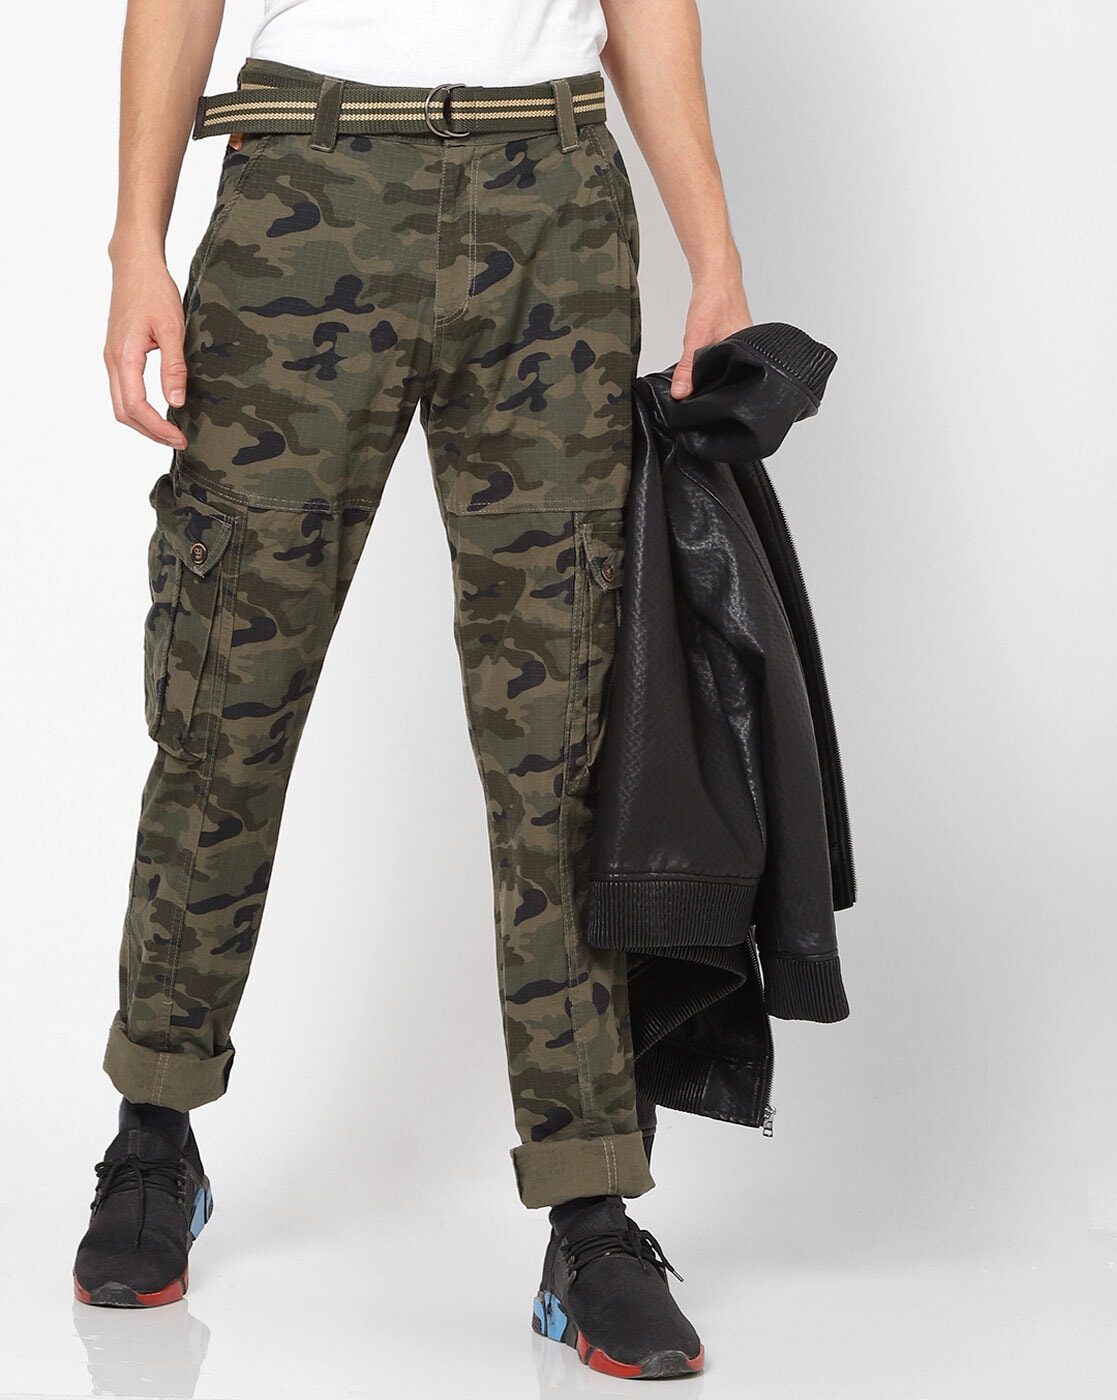 11 Best Canvas Cargo Pants for Men  Women  Work Wear Command